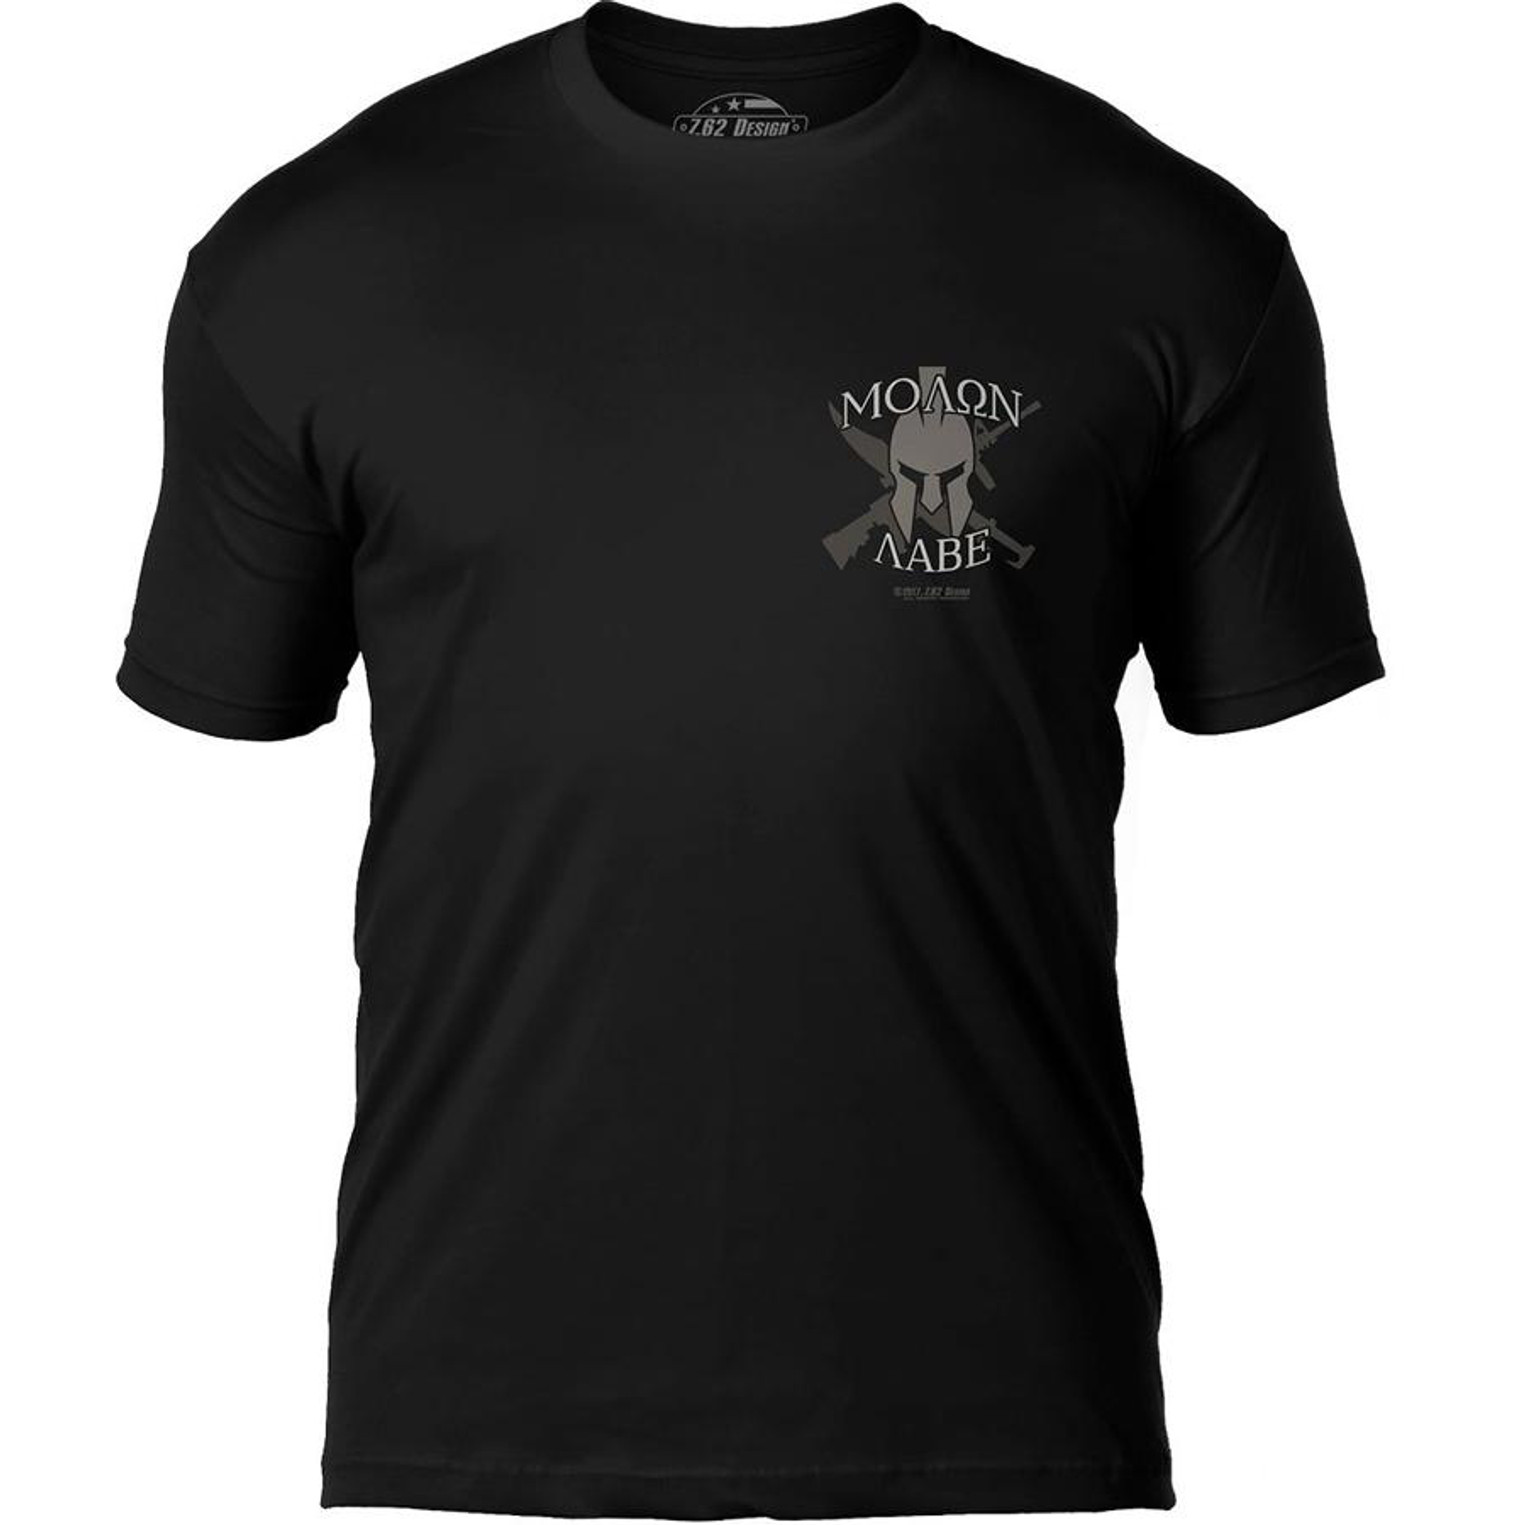 7.62 Design "Molon Labe" Premium Men's Patriotic T-Shirt (Size: Black / Large)